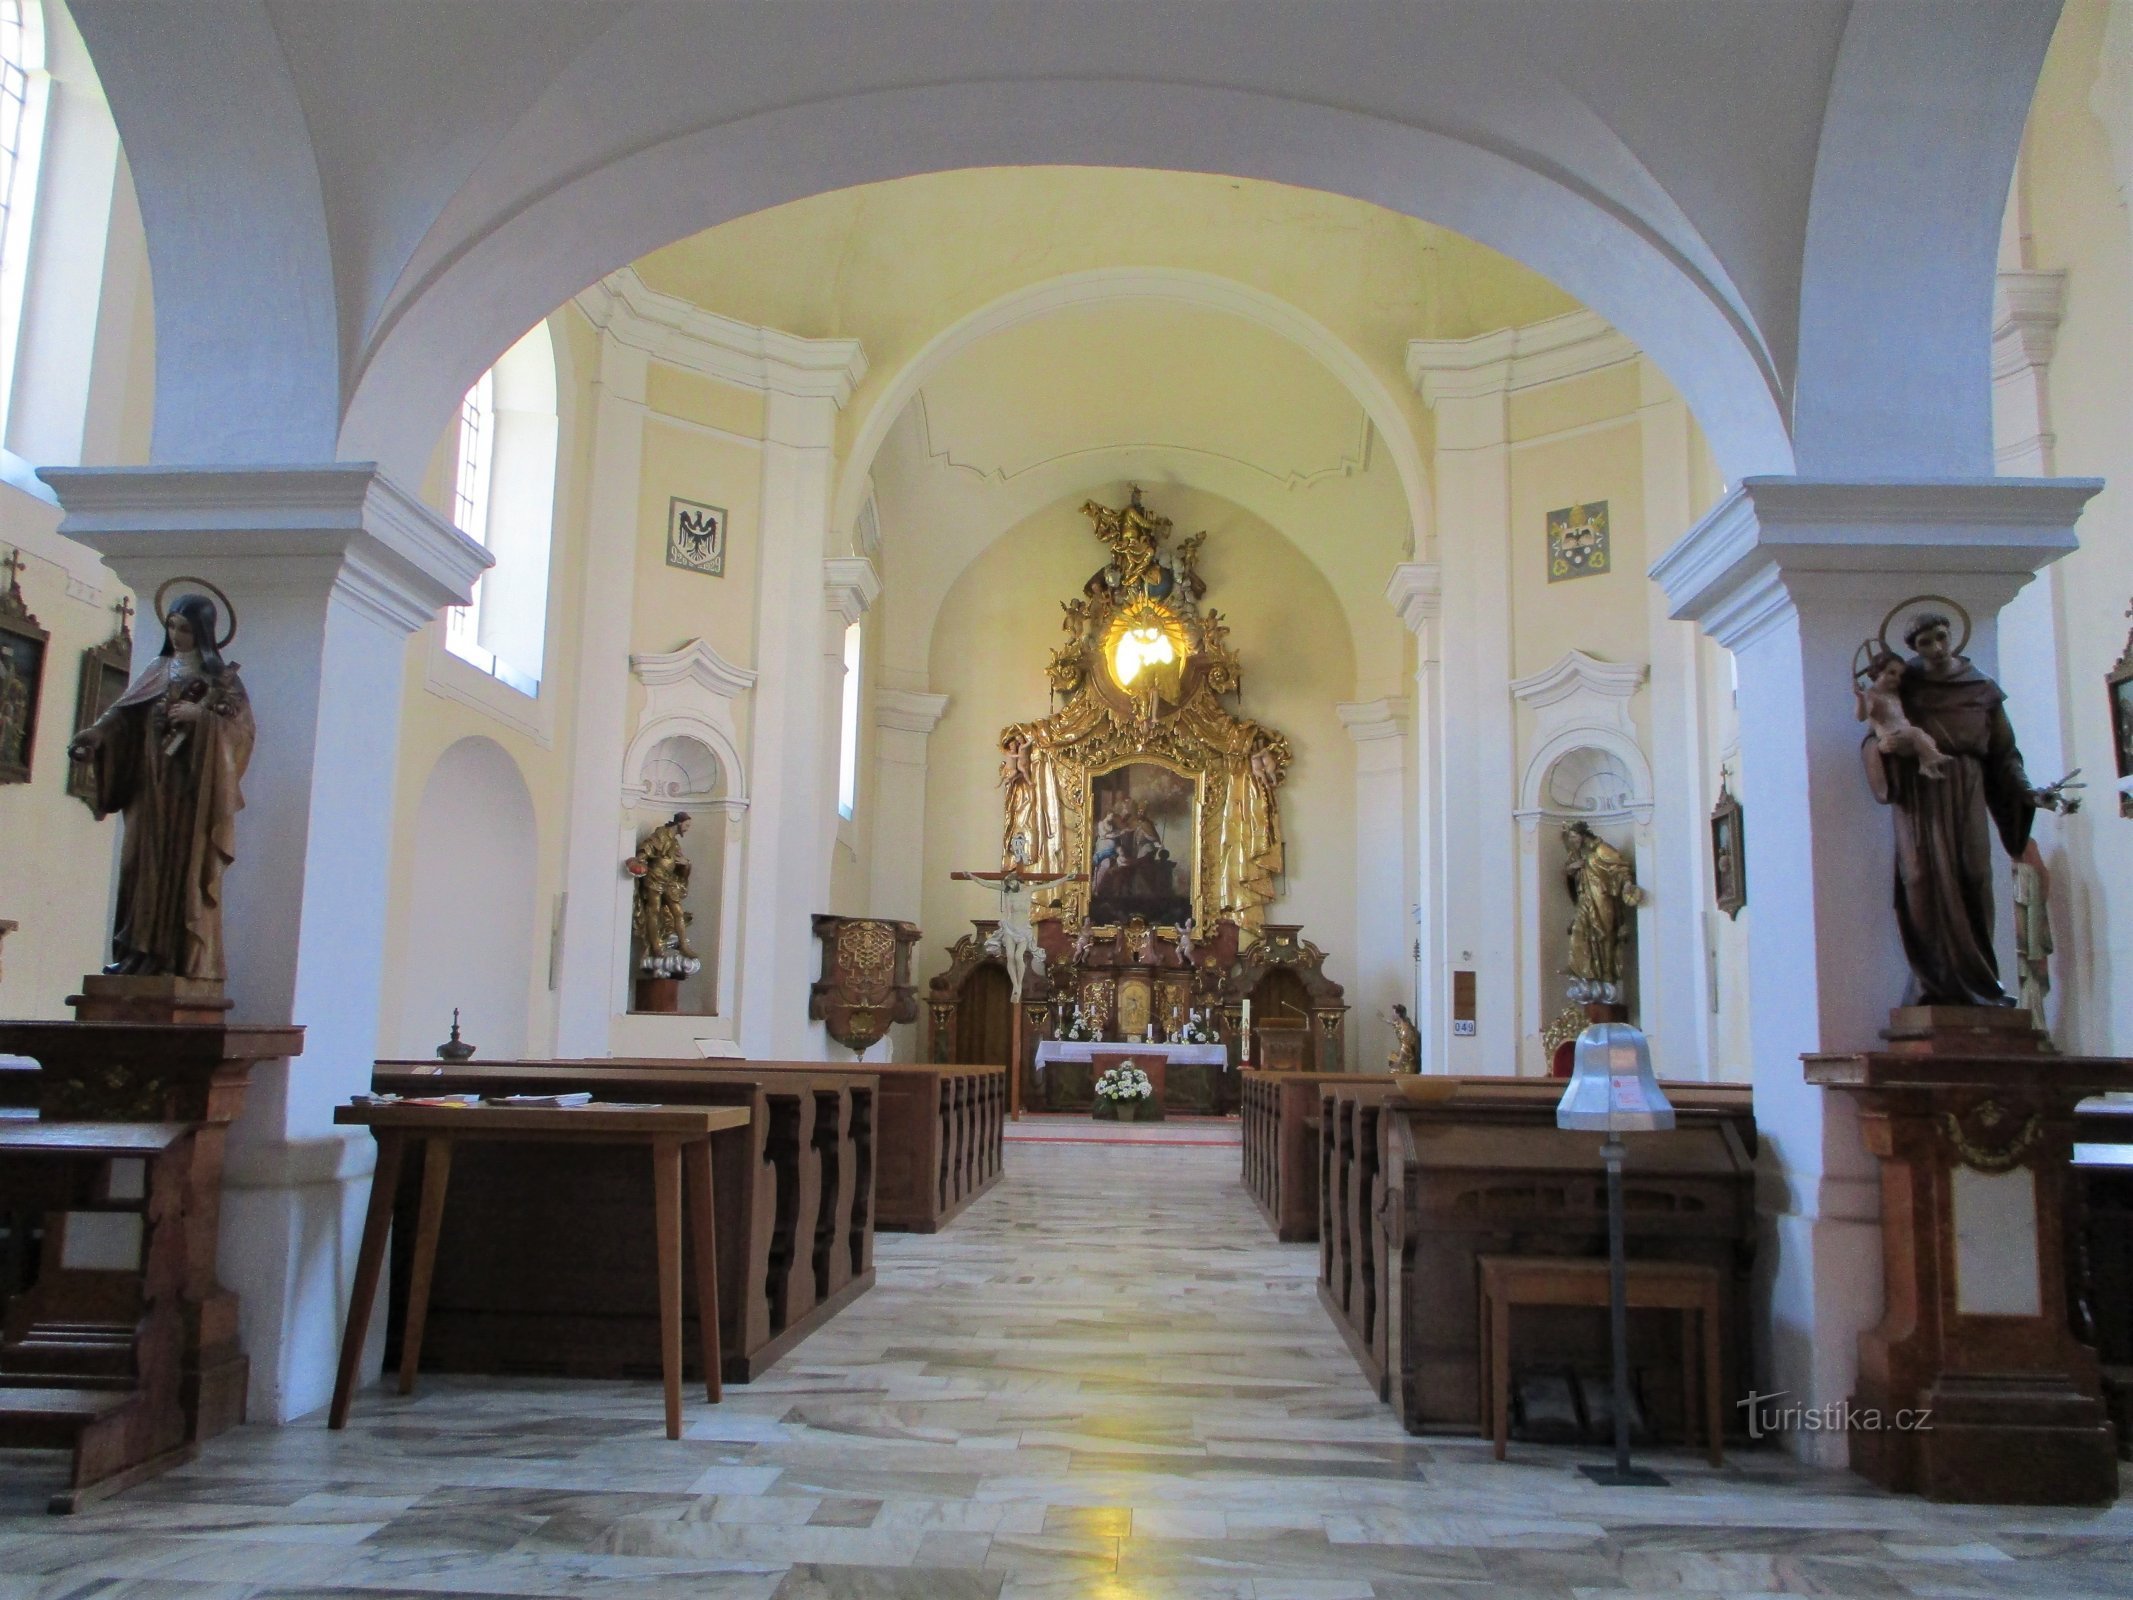 Interieur van de kerk van St. Martina (Holice, 16.5.2020/XNUMX/XNUMX)